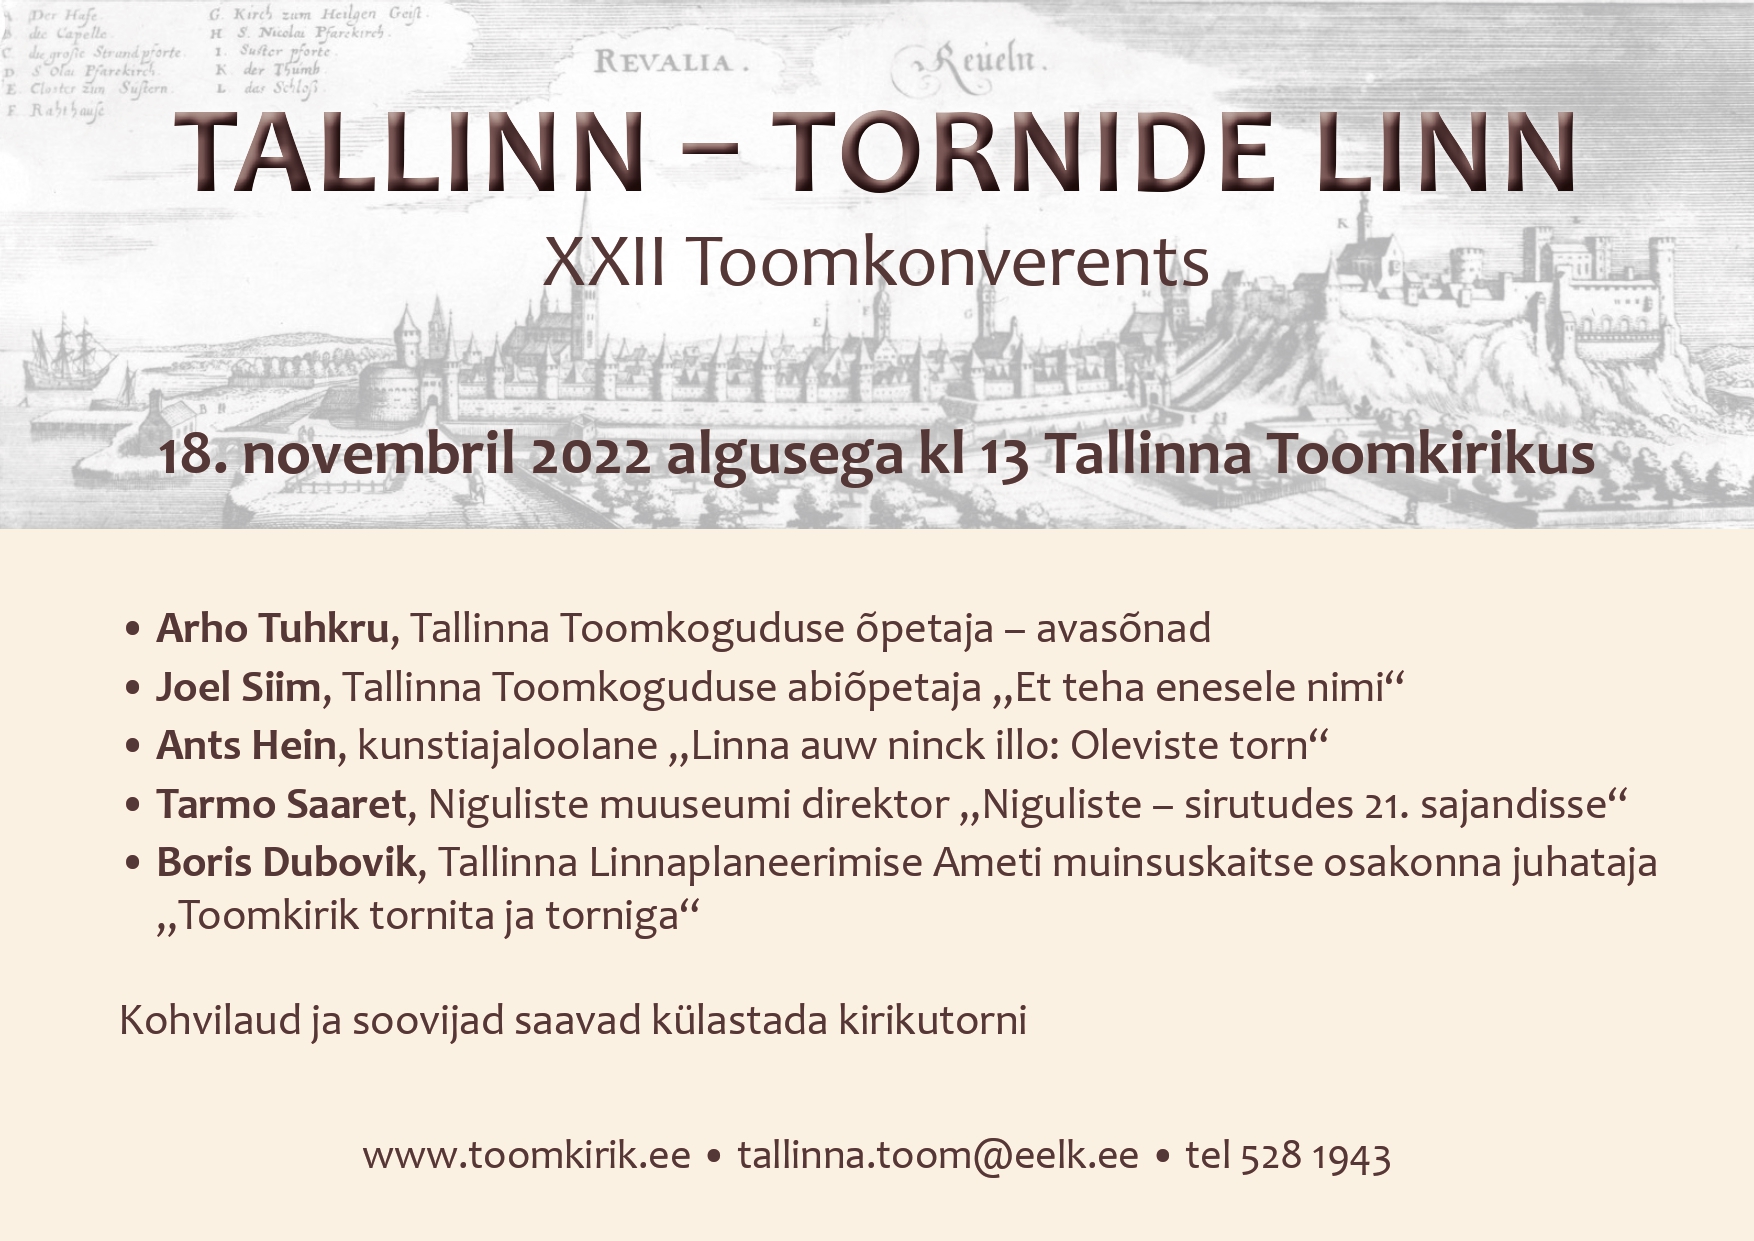 XXII toomkonverents „Tallinn – tornide linn“ on pühendatud üle linna kõrguvatele kirikutornidele